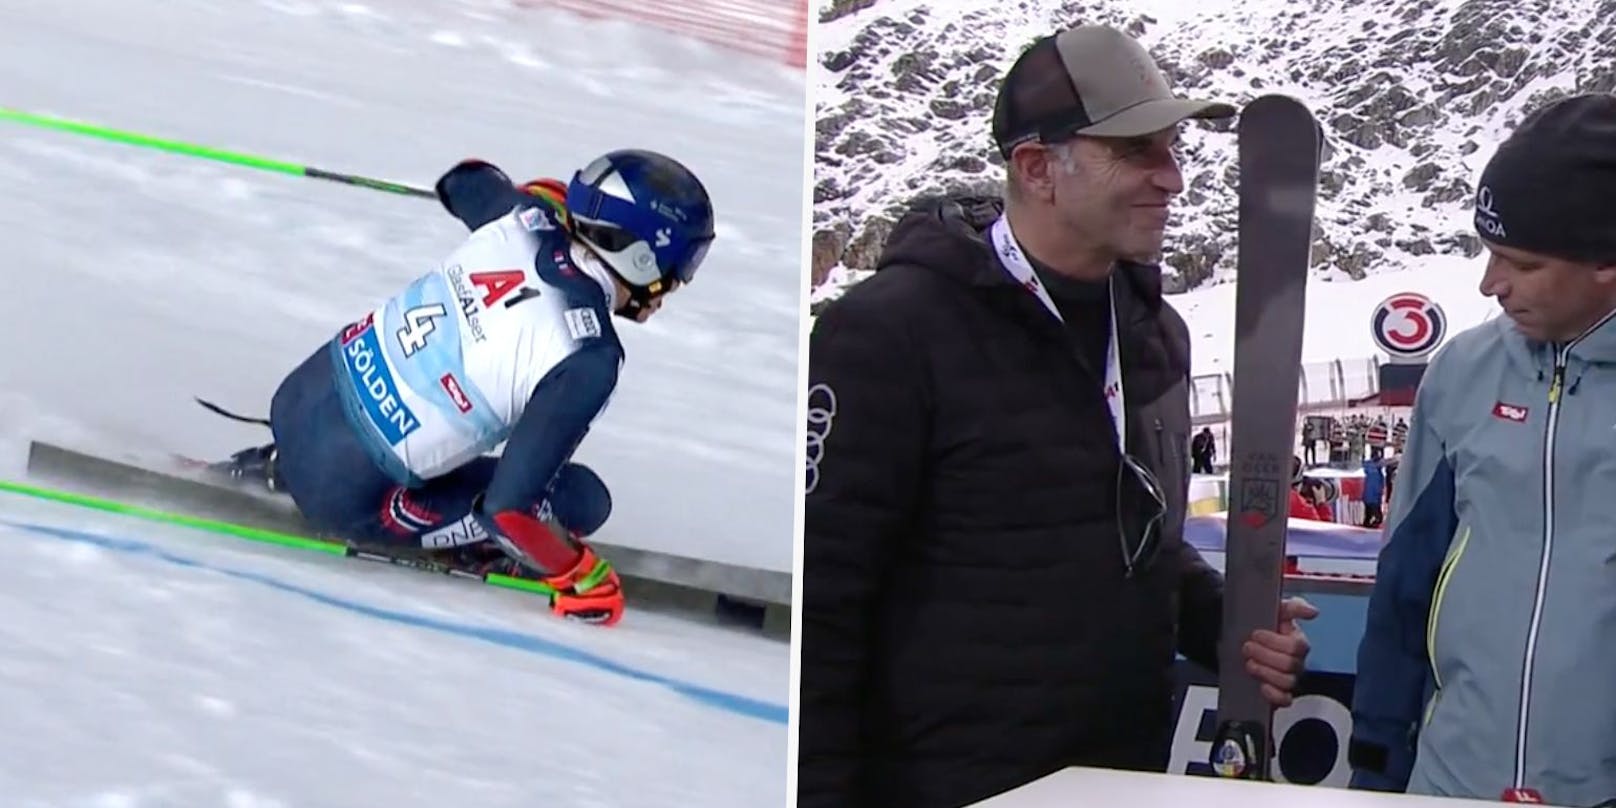 Henrik Kristoffersen fährt mit überklebtem Logo. Toni Giger zeigt es auf seinen Skiern nach dem Sölden-Rennen.